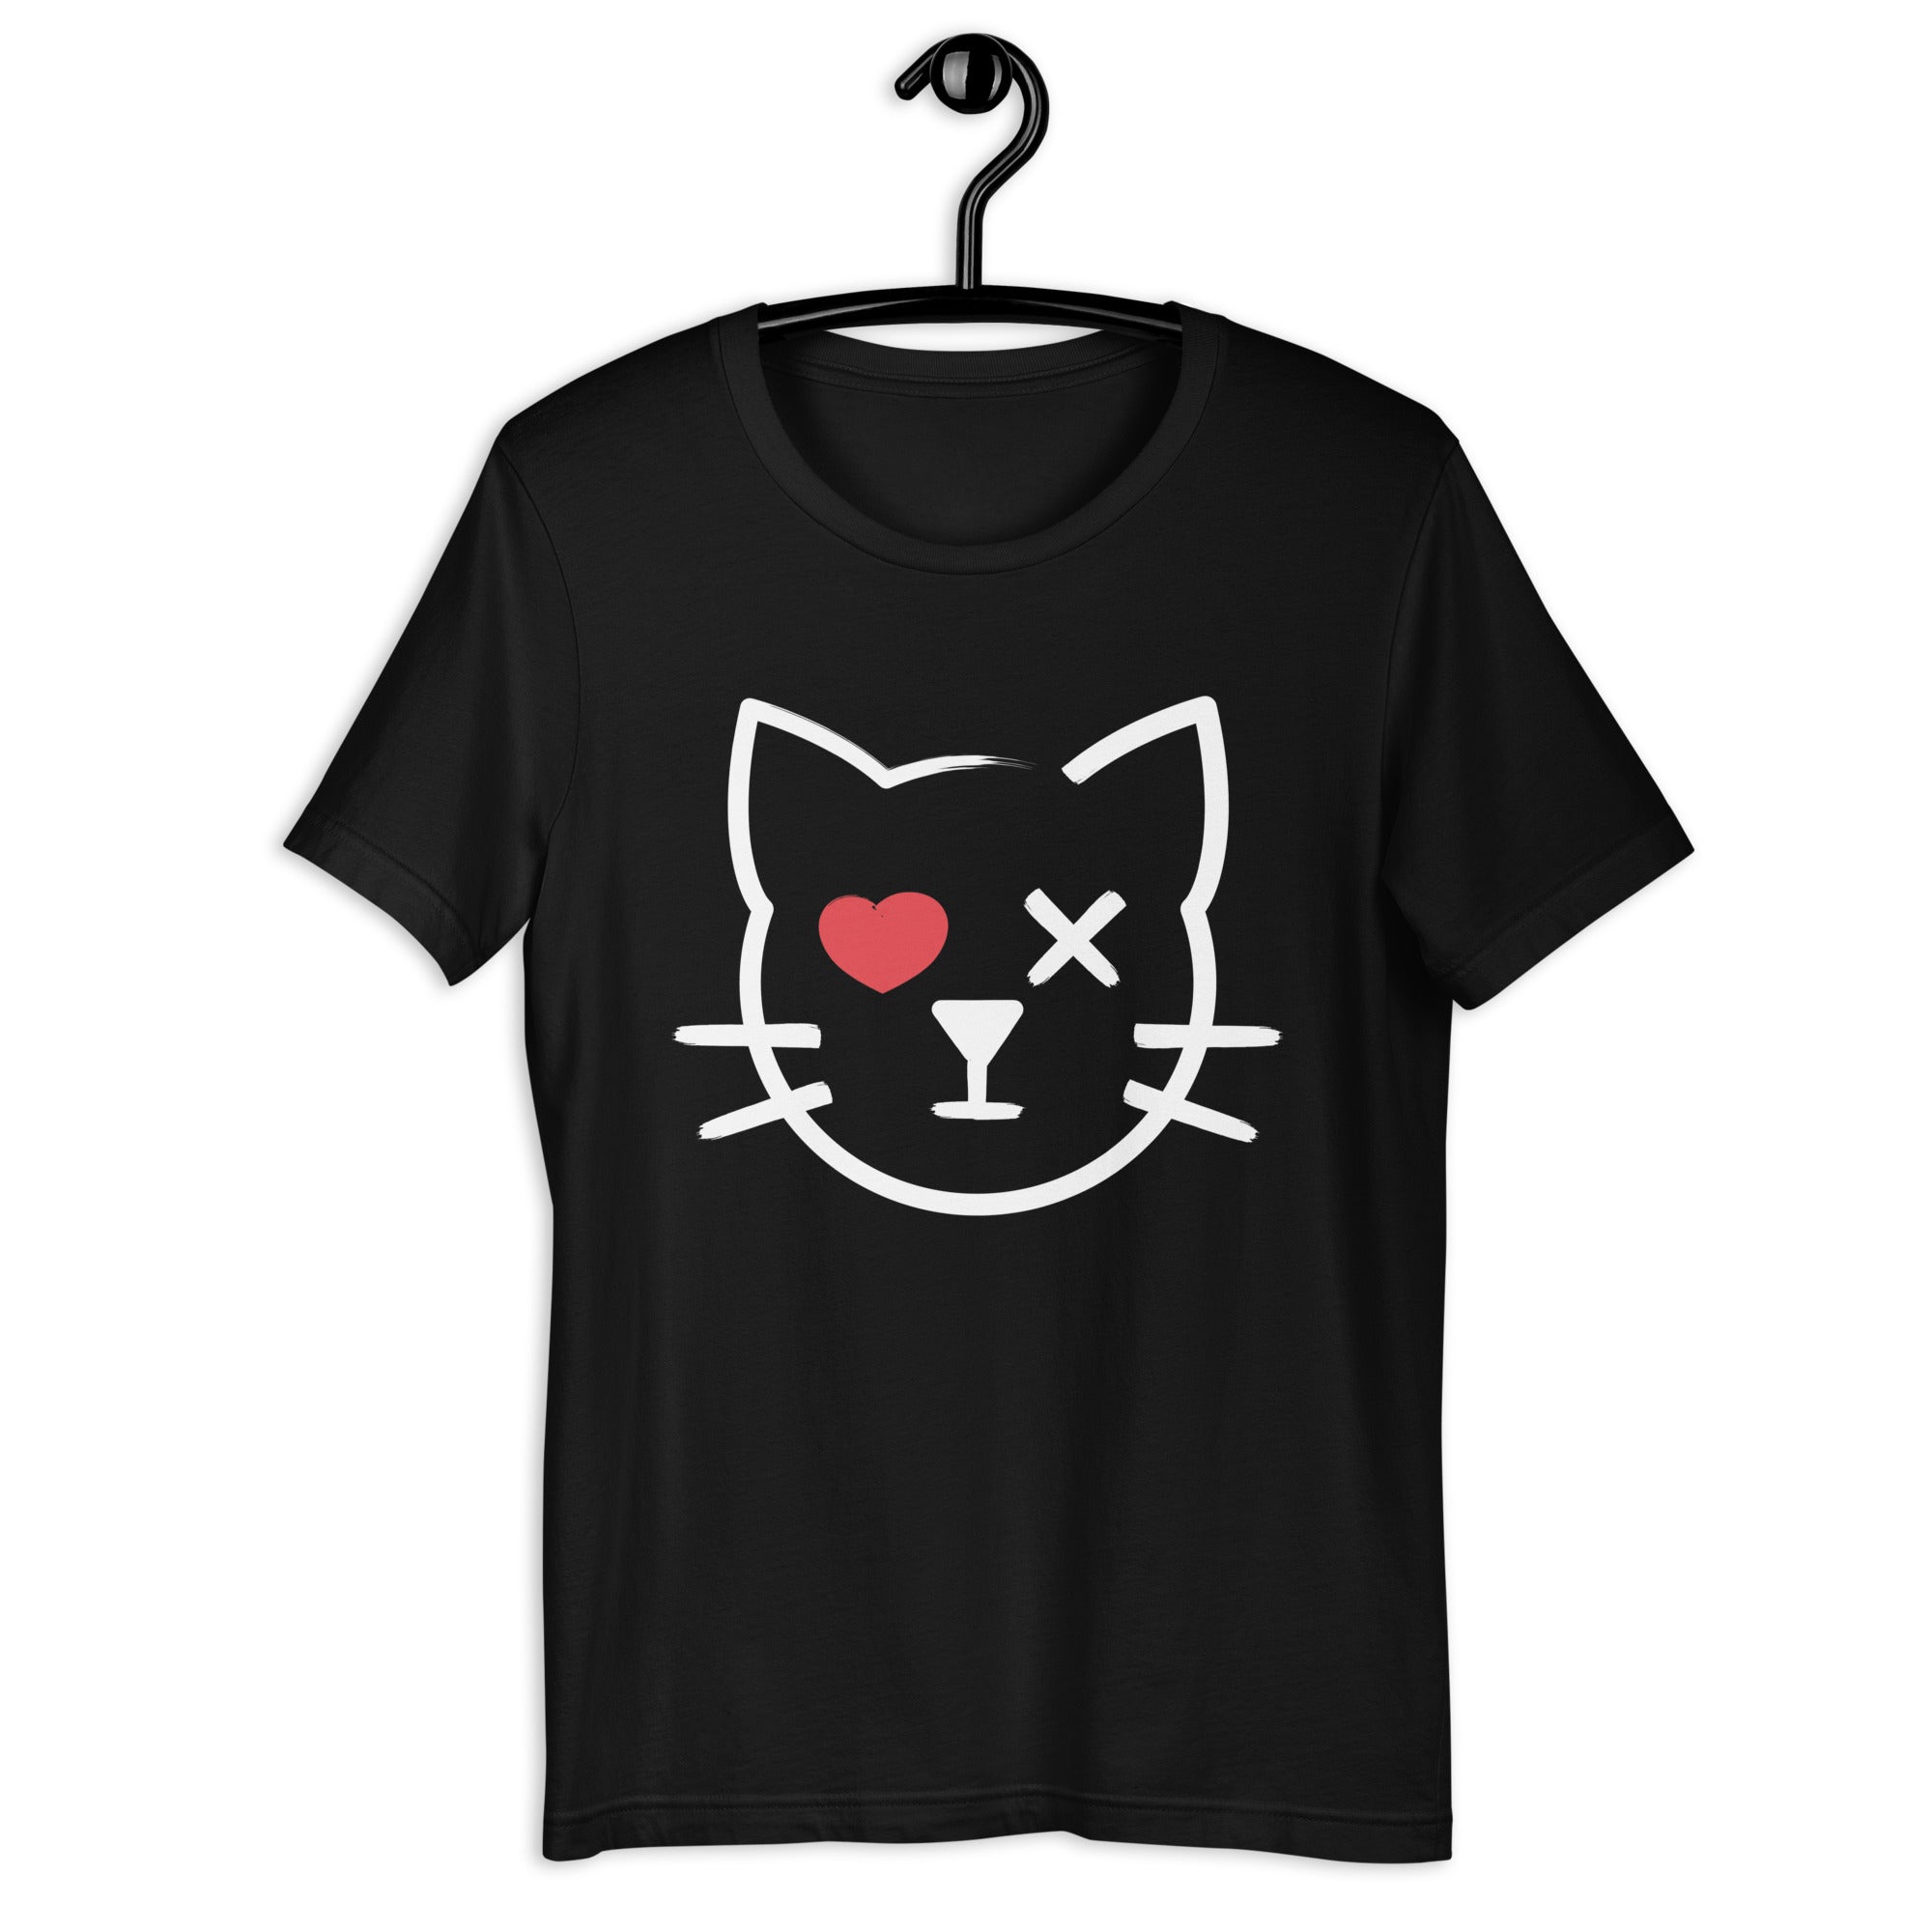 Iconic Cat - Unisex T-Shirt